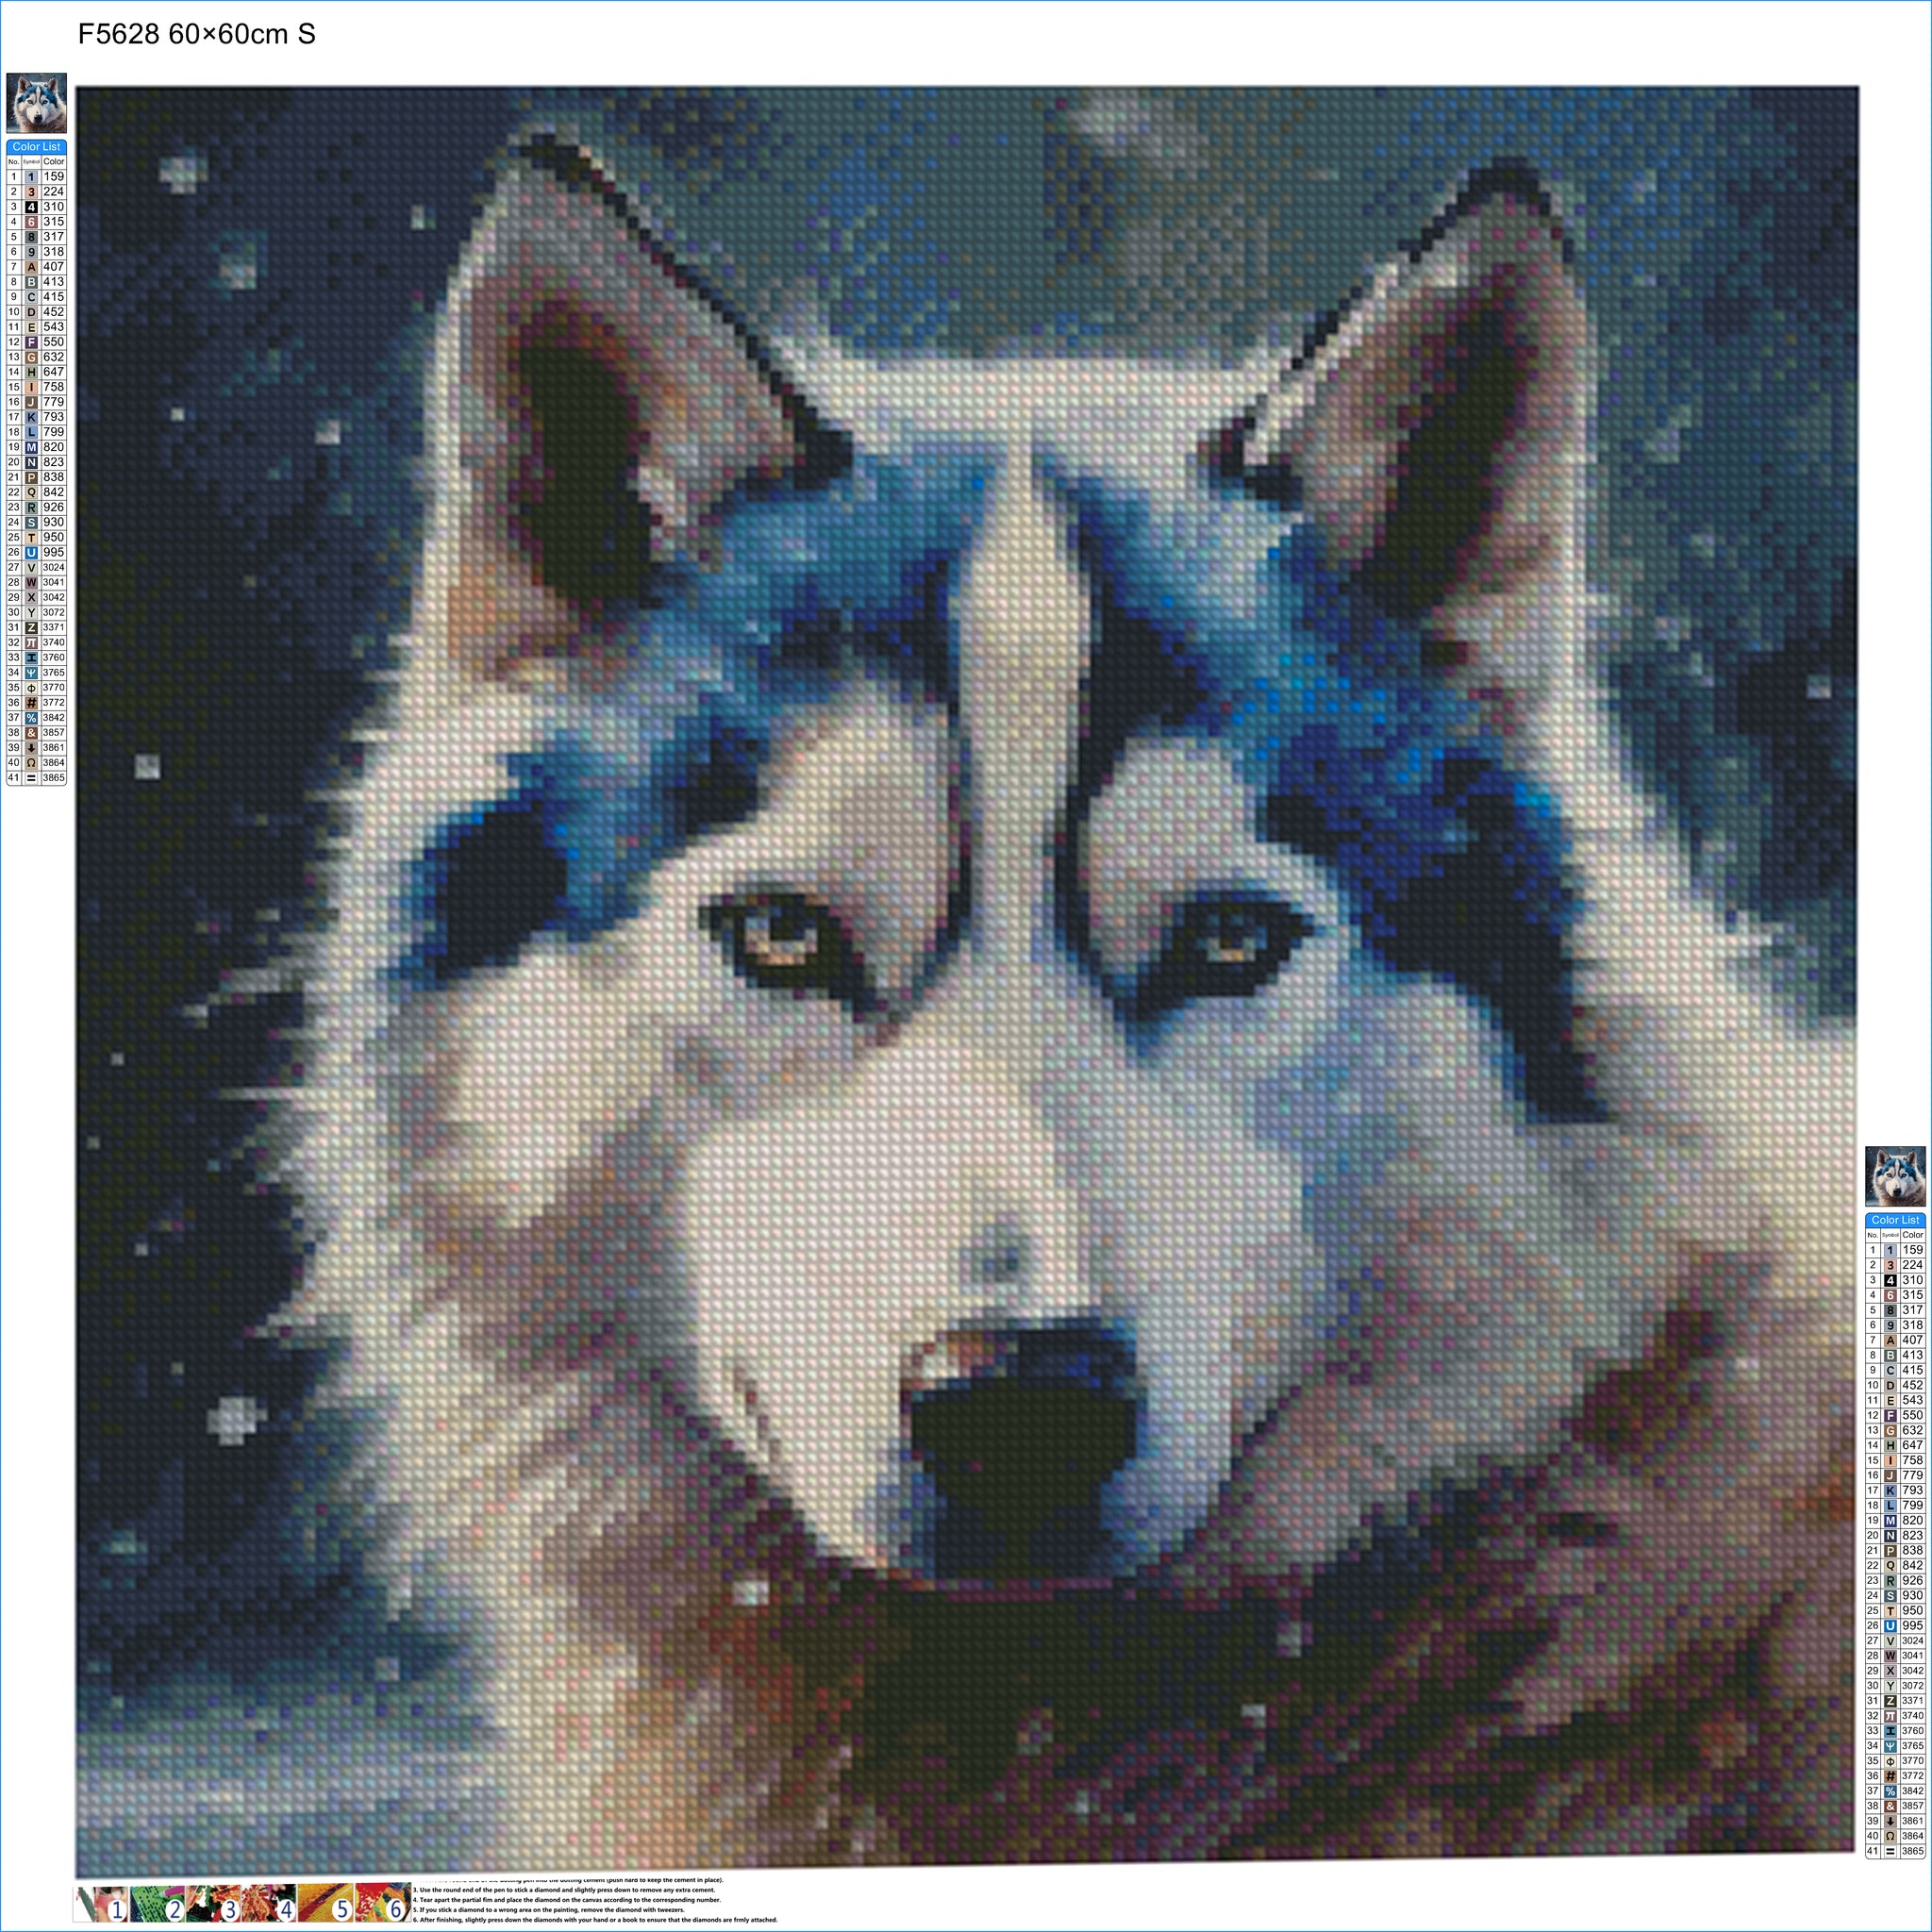 Striking Eyes Siberian Husky - Diamond Kit - Painted Memory